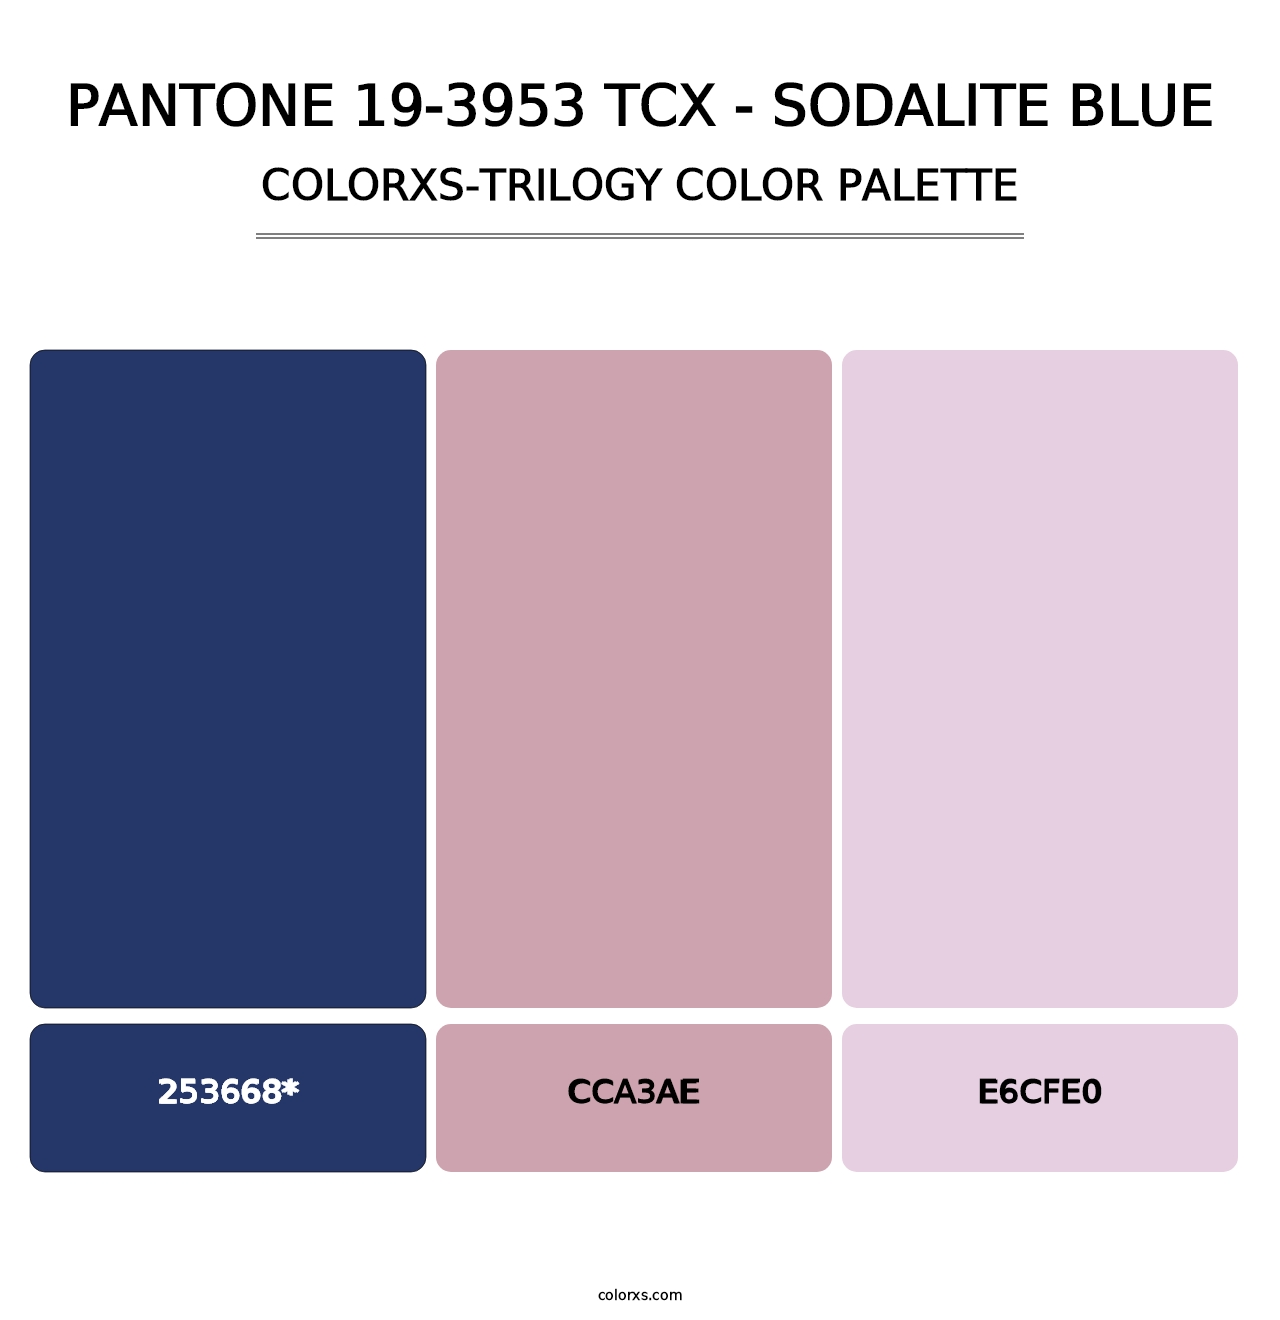 PANTONE 19-3953 TCX - Sodalite Blue - Colorxs Trilogy Palette